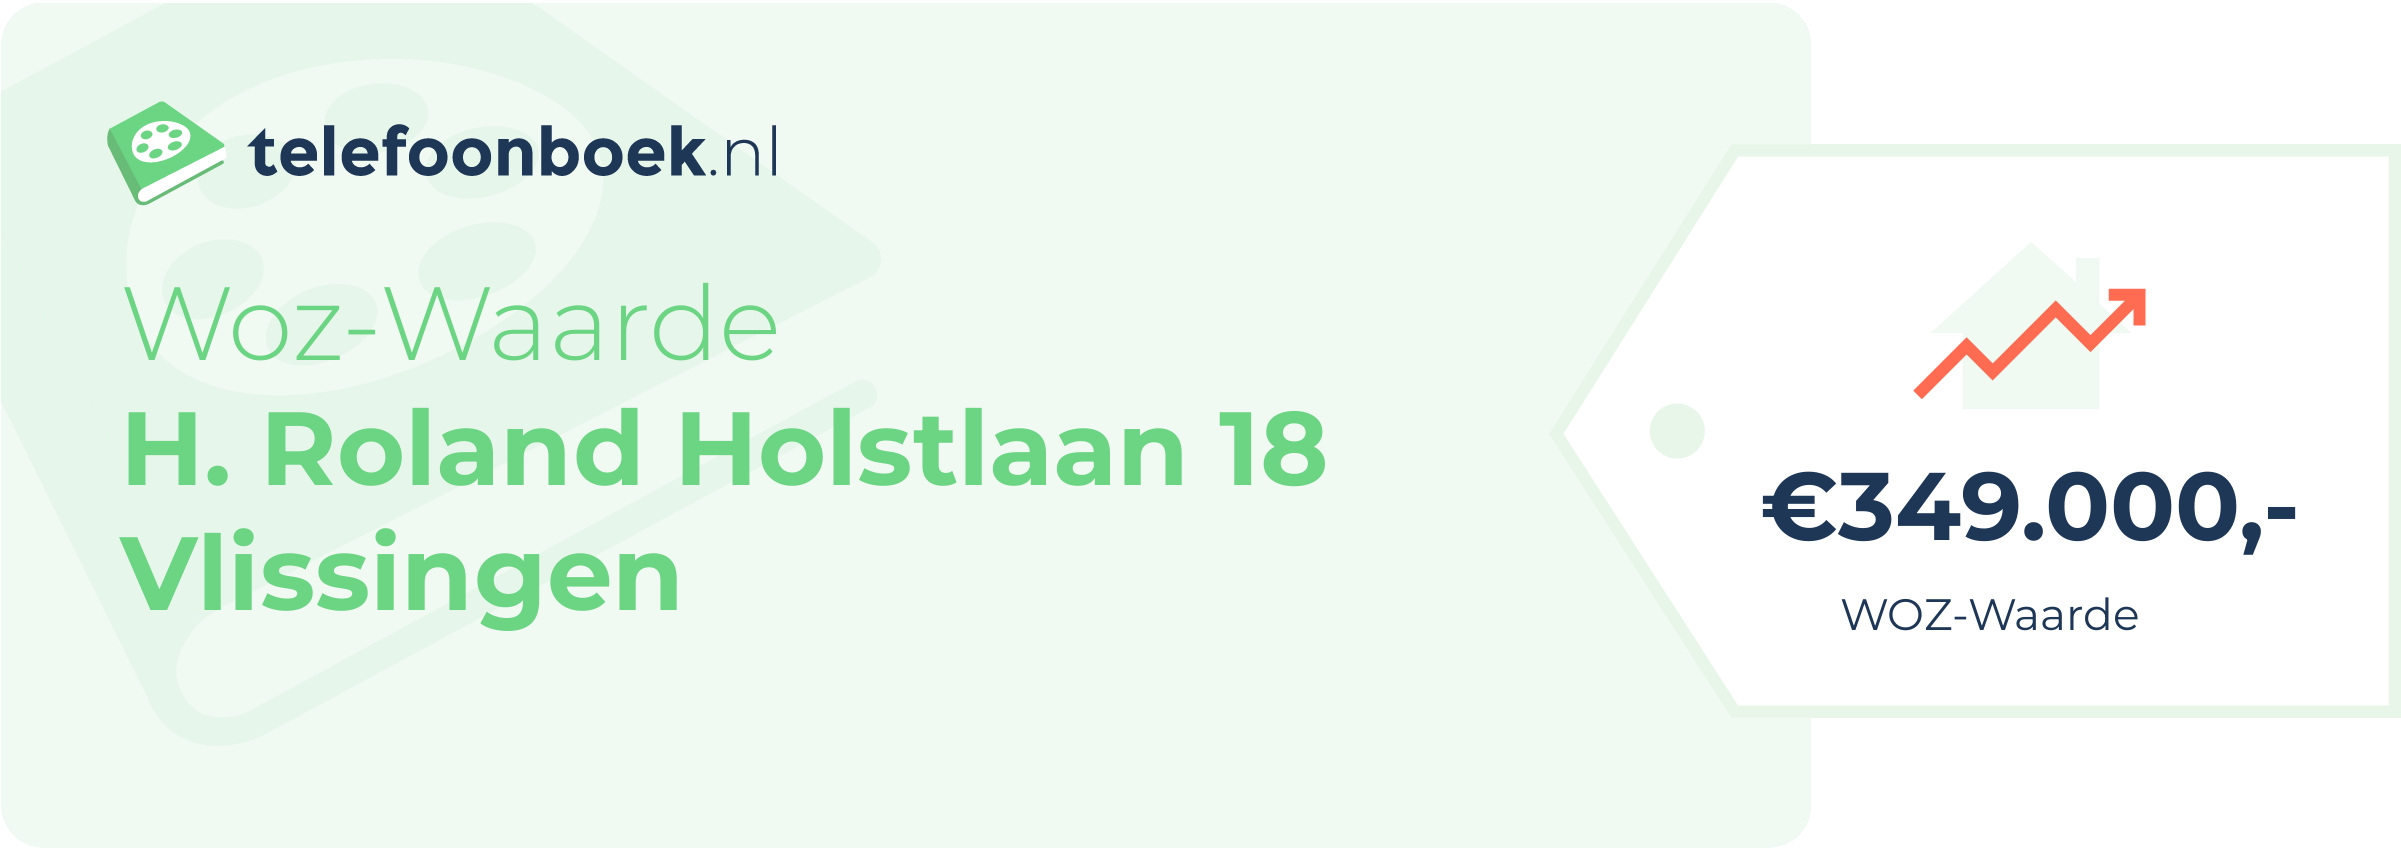 WOZ-waarde H. Roland Holstlaan 18 Vlissingen